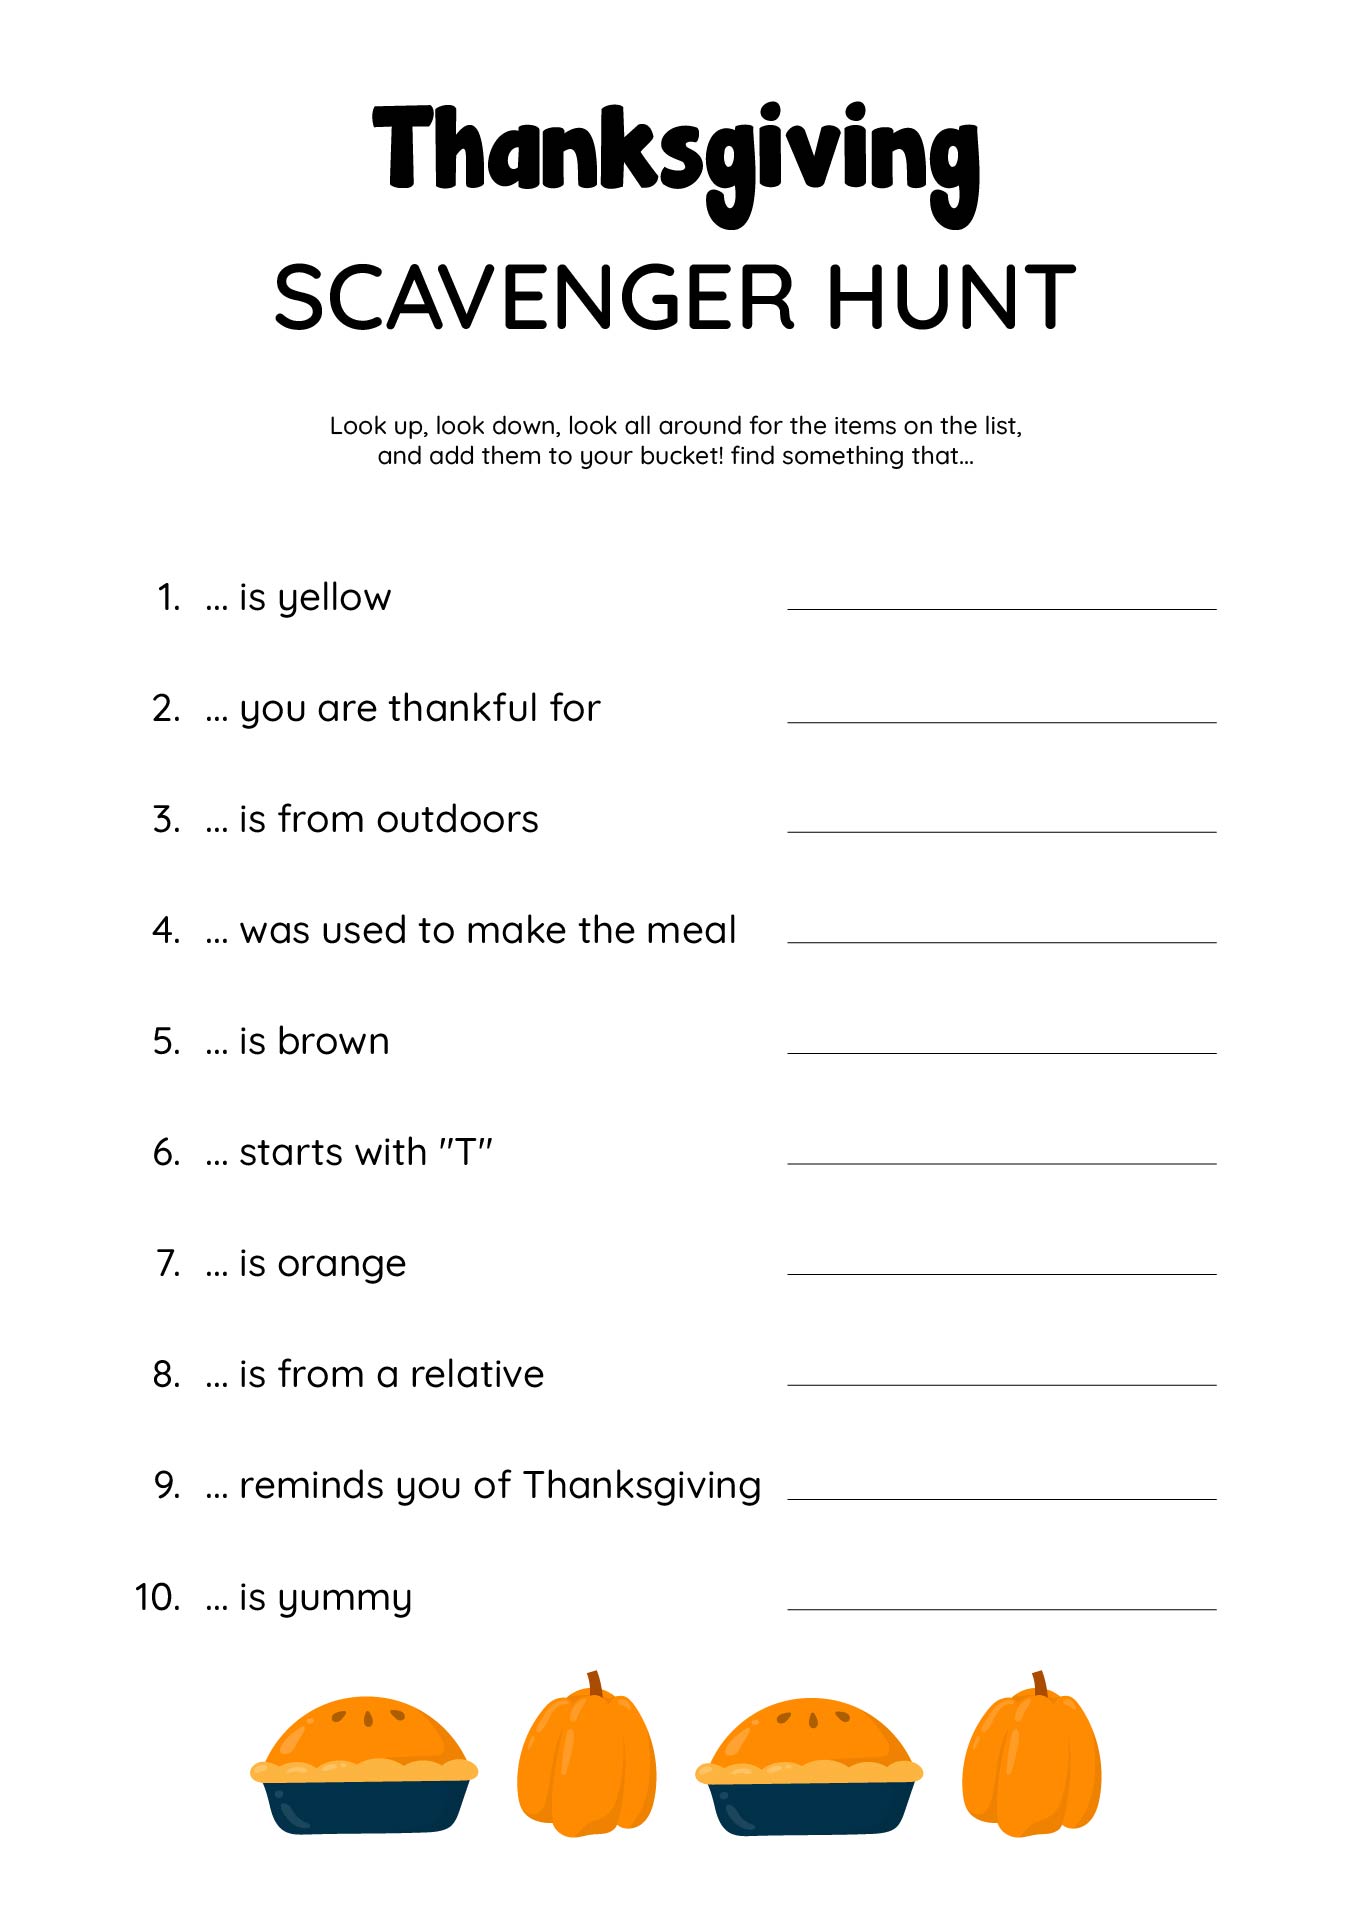 Thanksgiving Day Scavenger Hunt